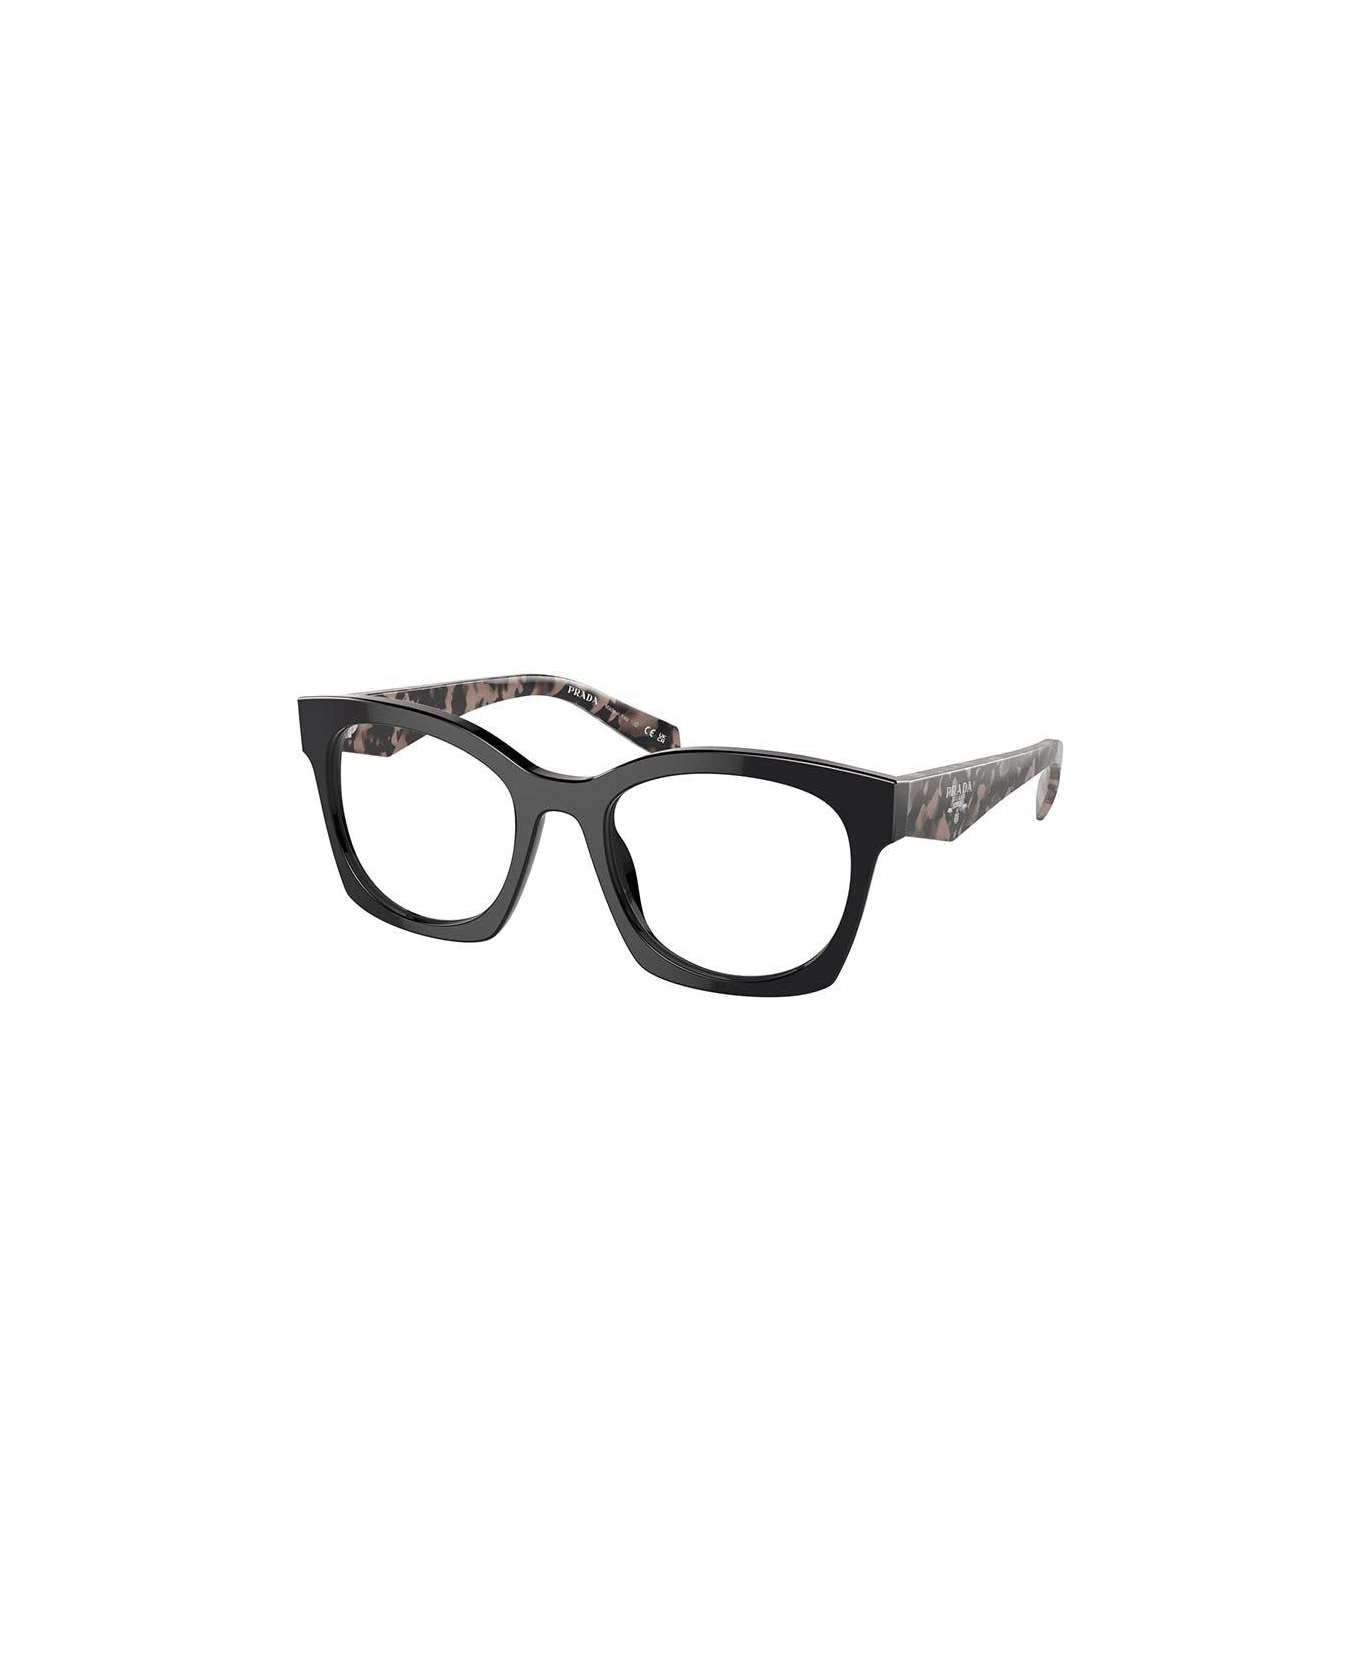 Prada debut Eyewear D-frame Glasses - 13p1o1